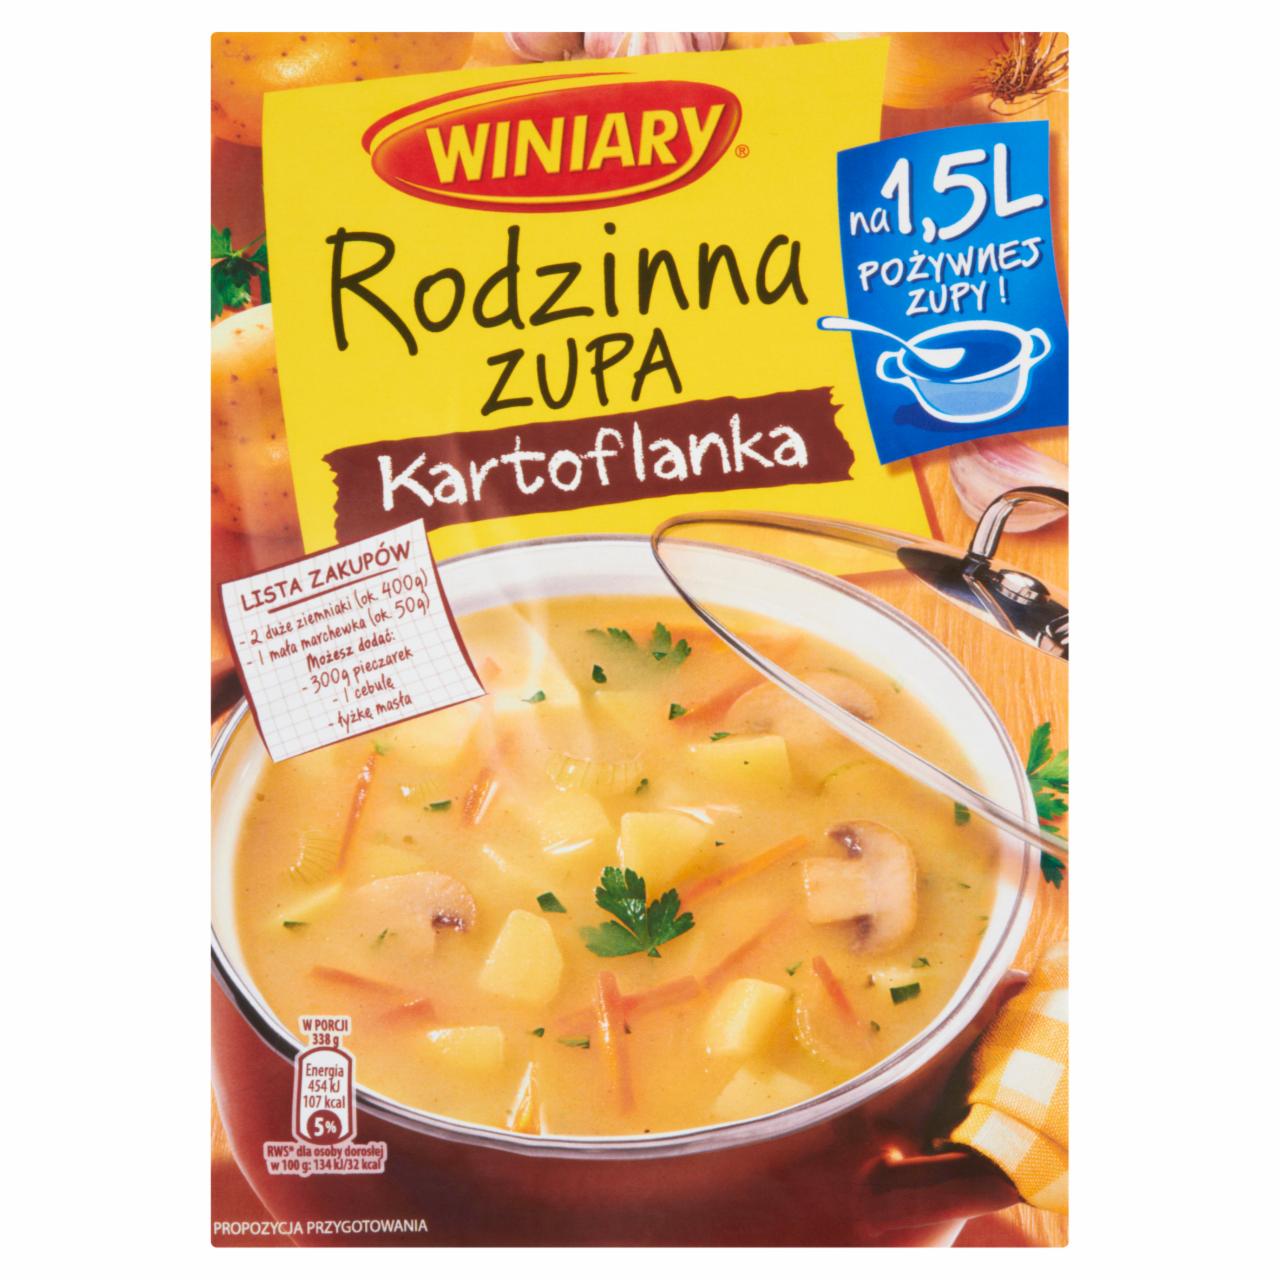 Zdjęcia - Winiary Rodzinna zupa Kartoflanka 79 g